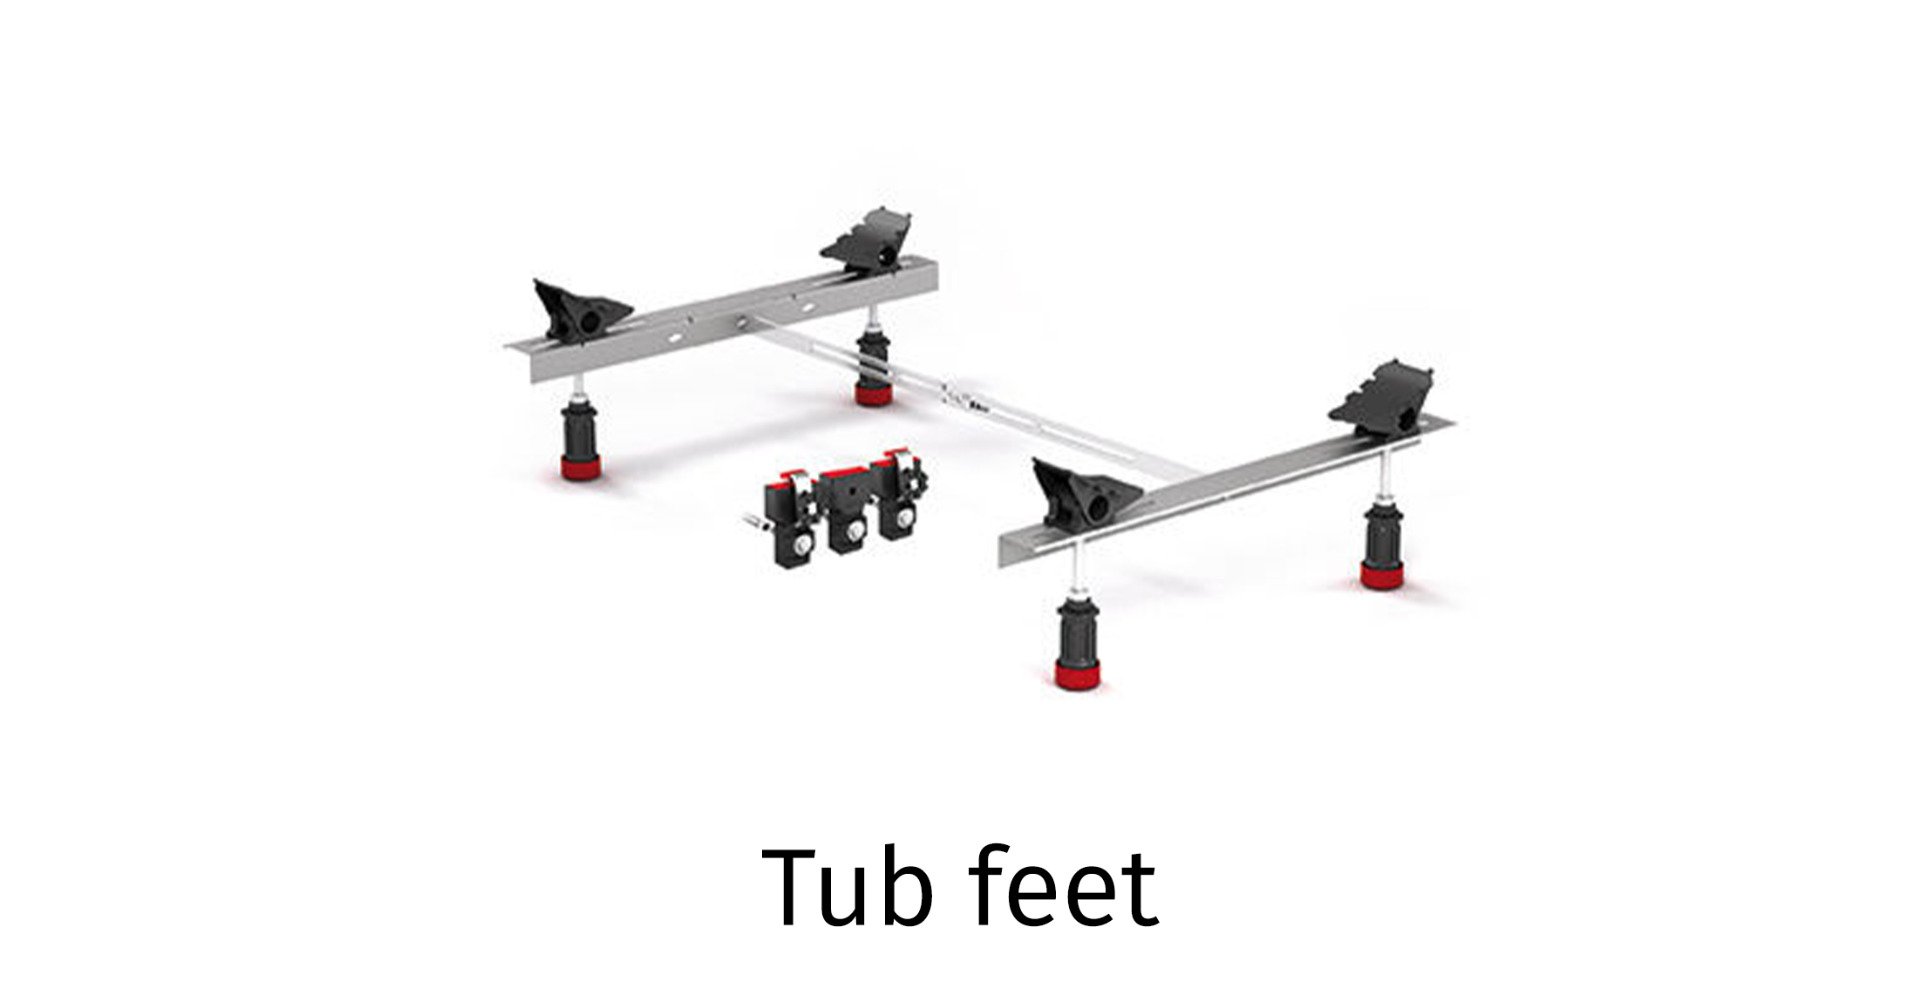 Tub feet